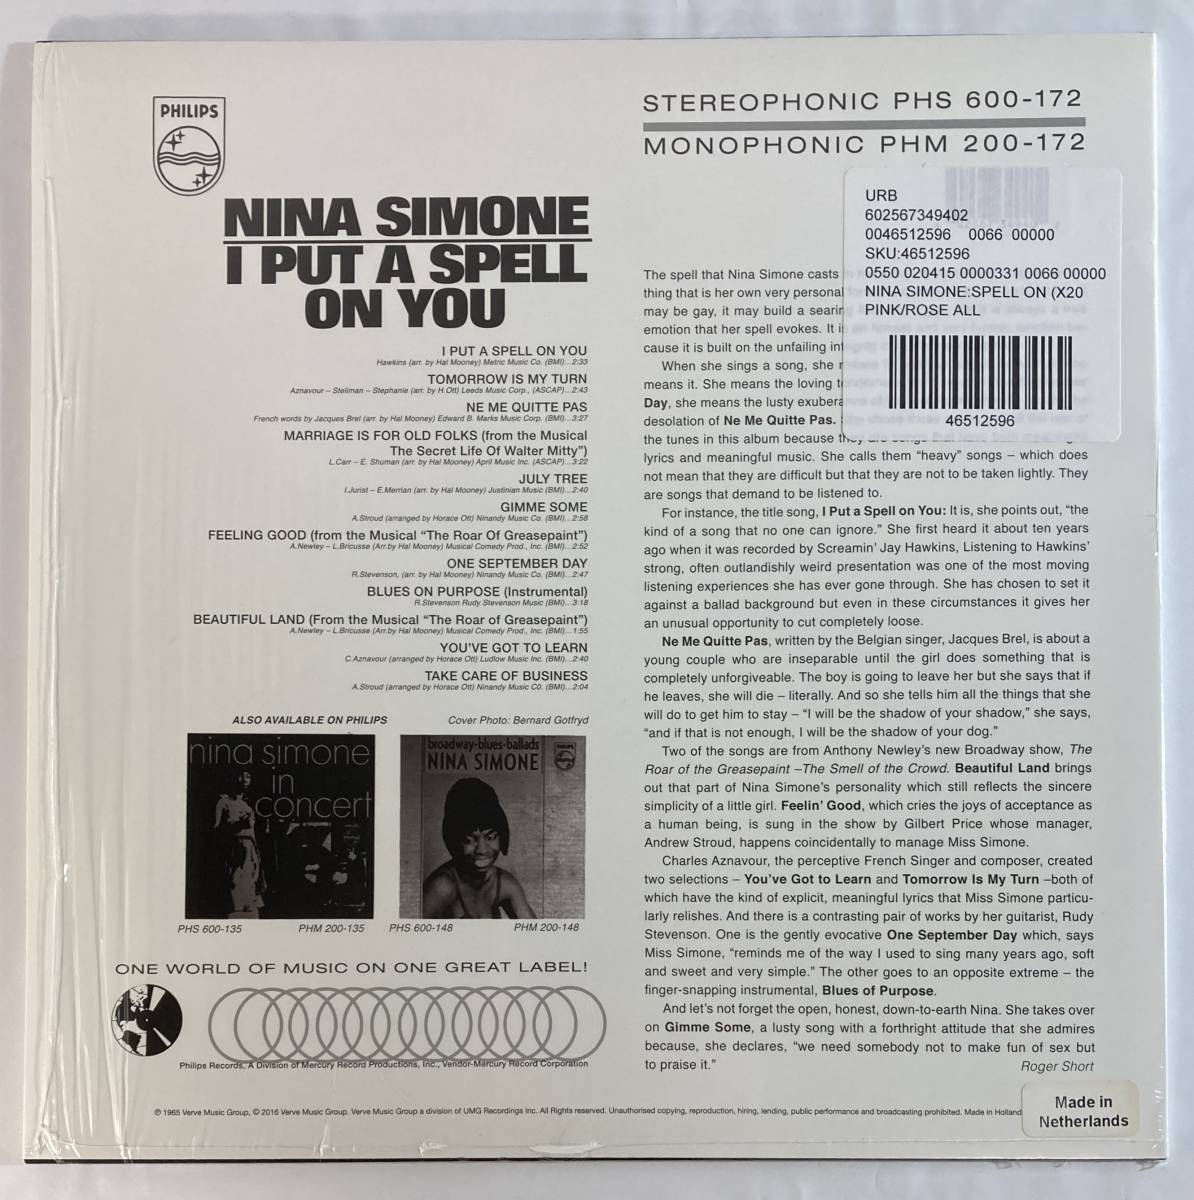 ニーナ・シモン (Nina Simone) / I Put A Spell On You 蘭盤LP PHS 600-172 STEREO 限定重量盤 ピンクワックス_画像2